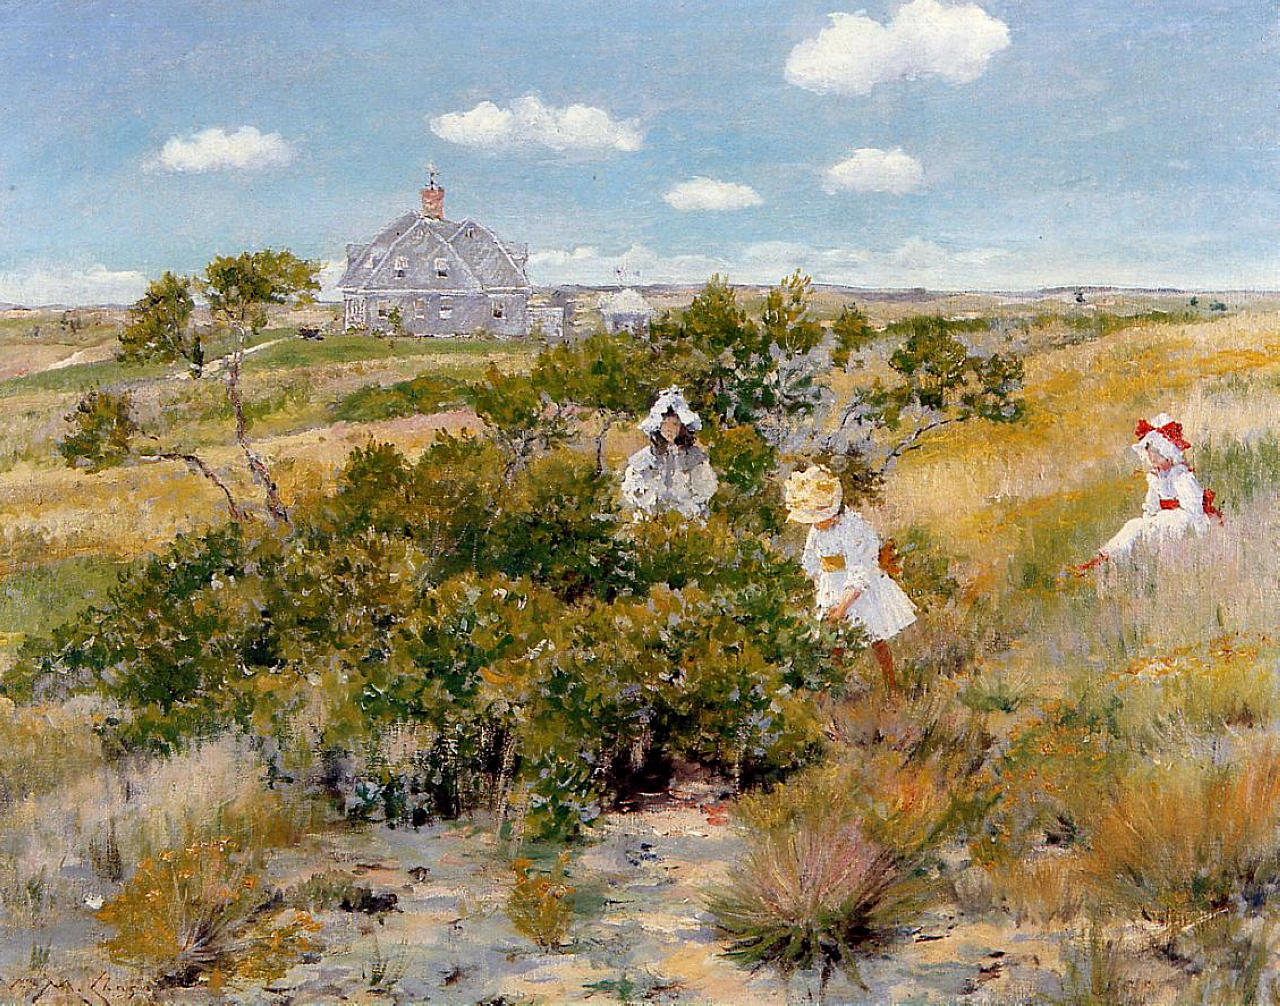 O Grande Arbusto de Bayberry (O Arbusto de Bayberry) by William Merritt Chase  - ca. 1895 